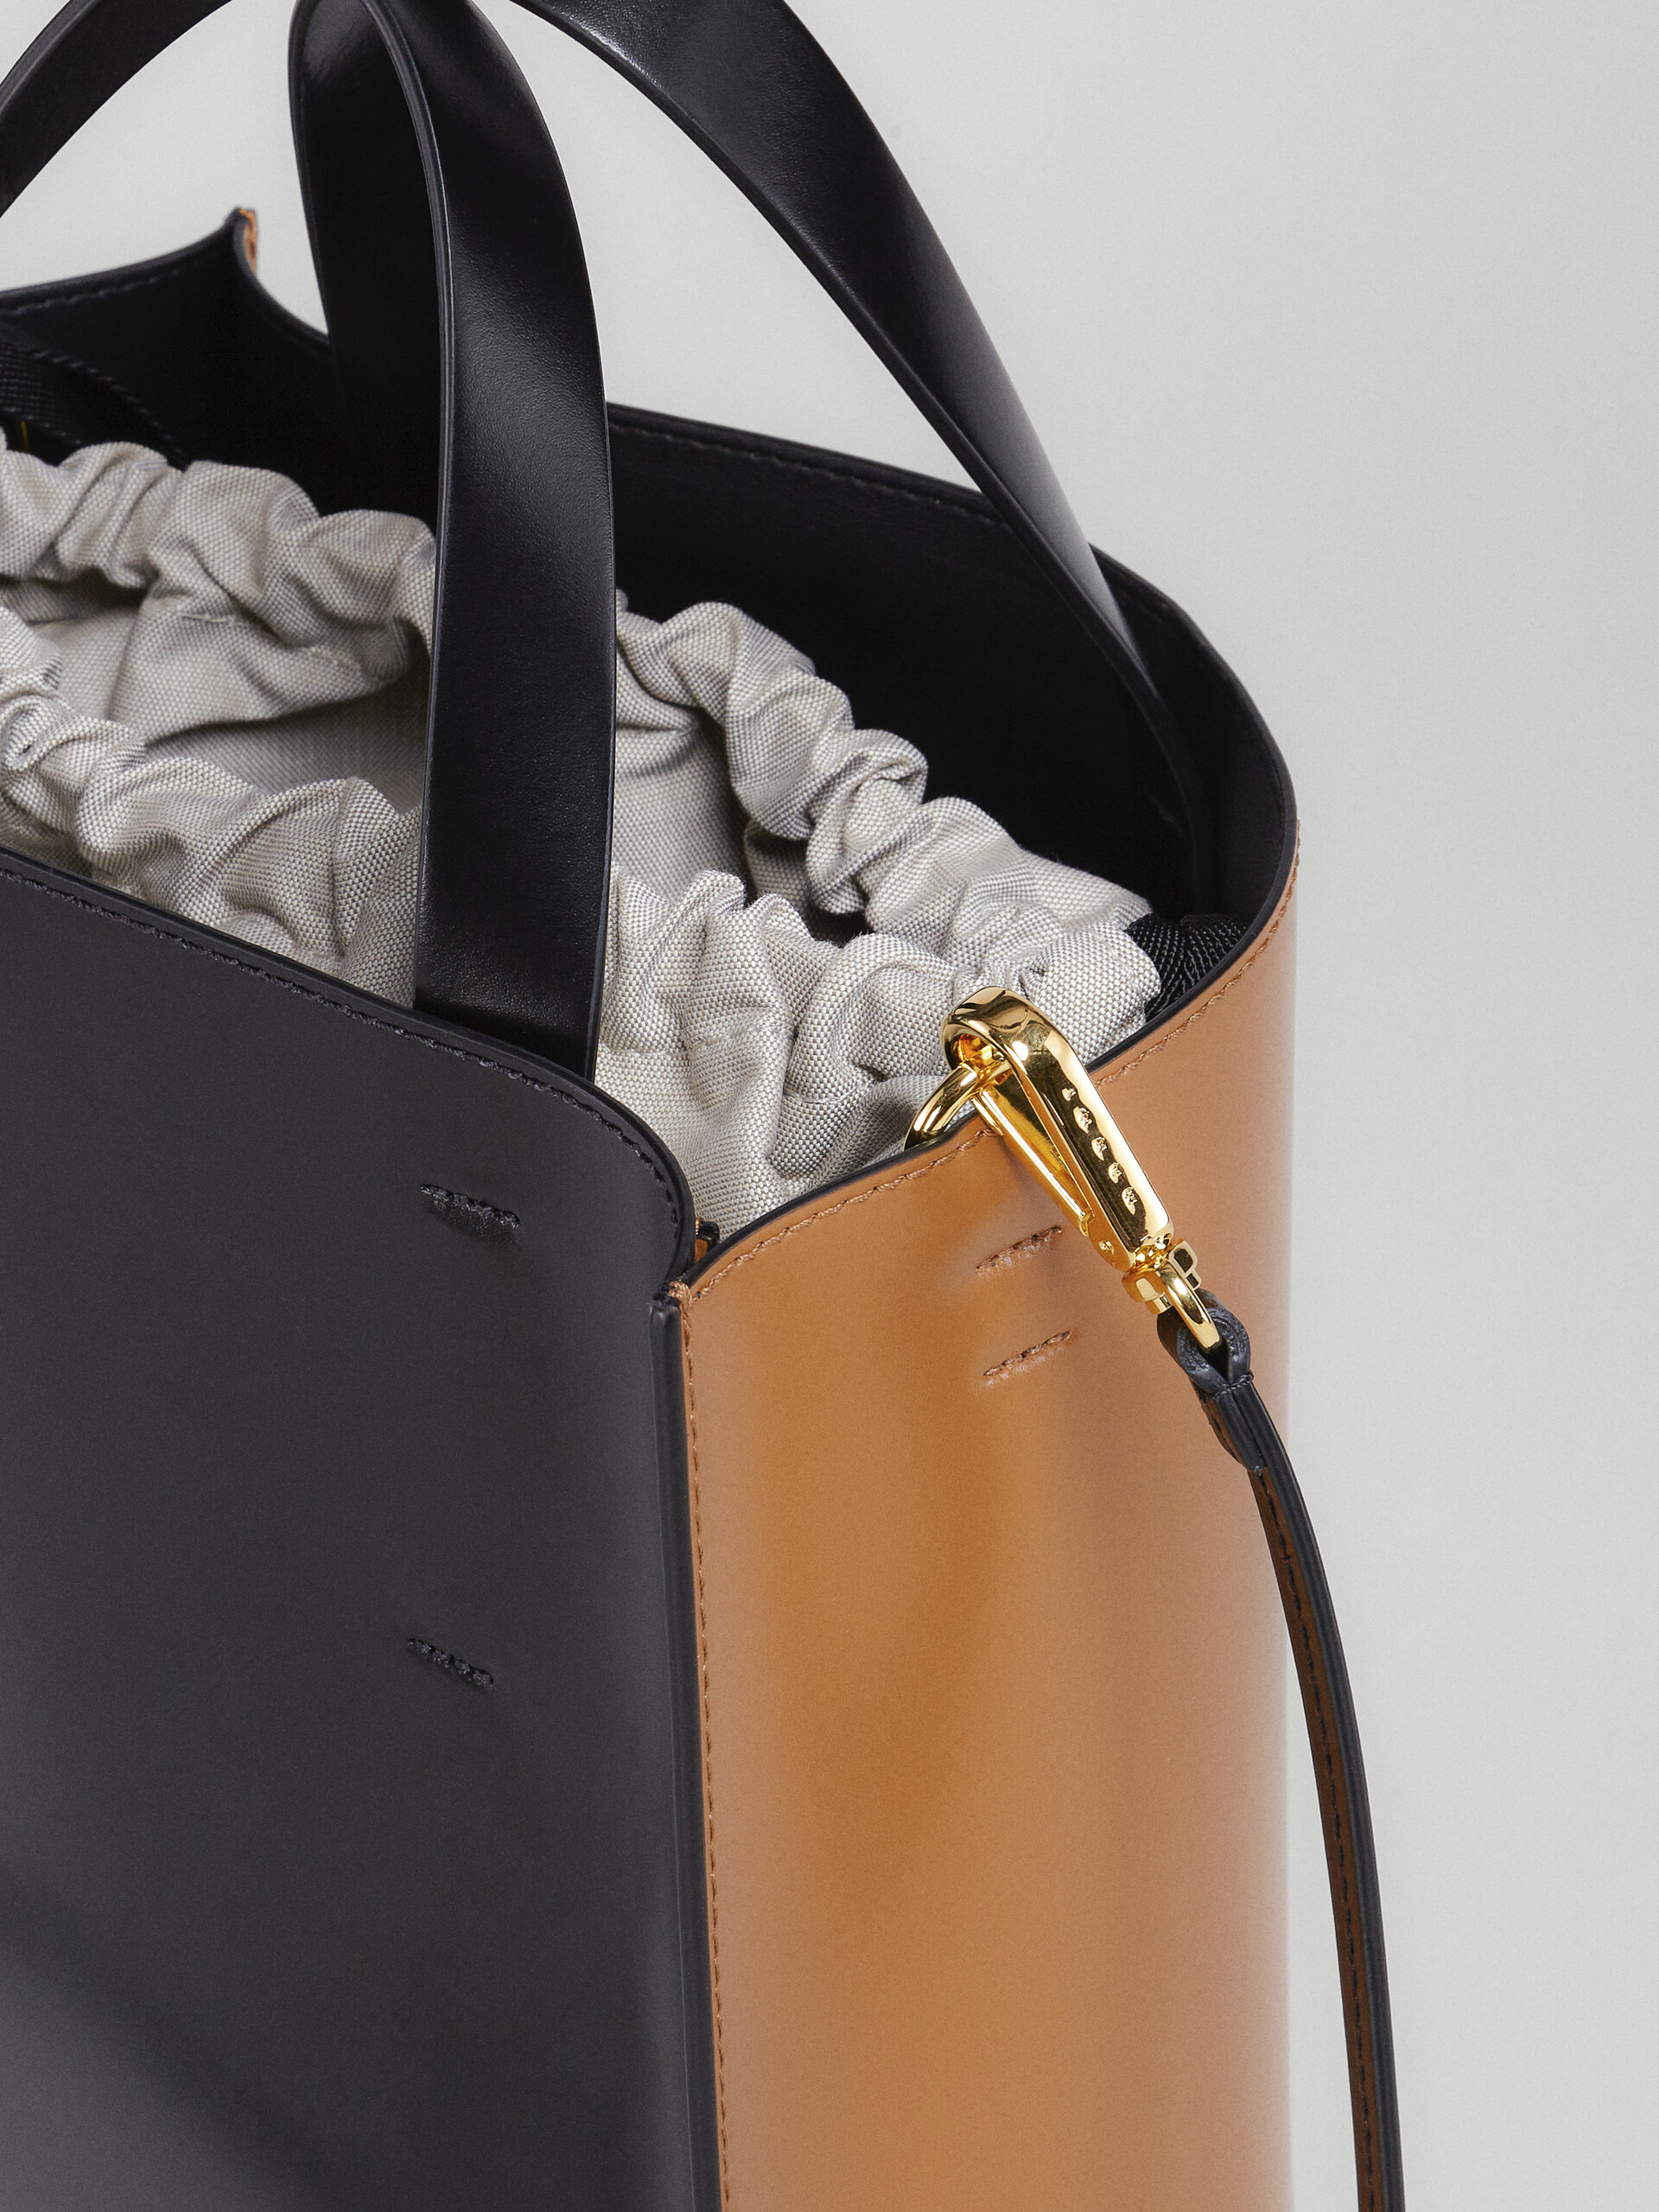 Petit sac MUSEO en cuir marron et noir - Sacs cabas - Image 4